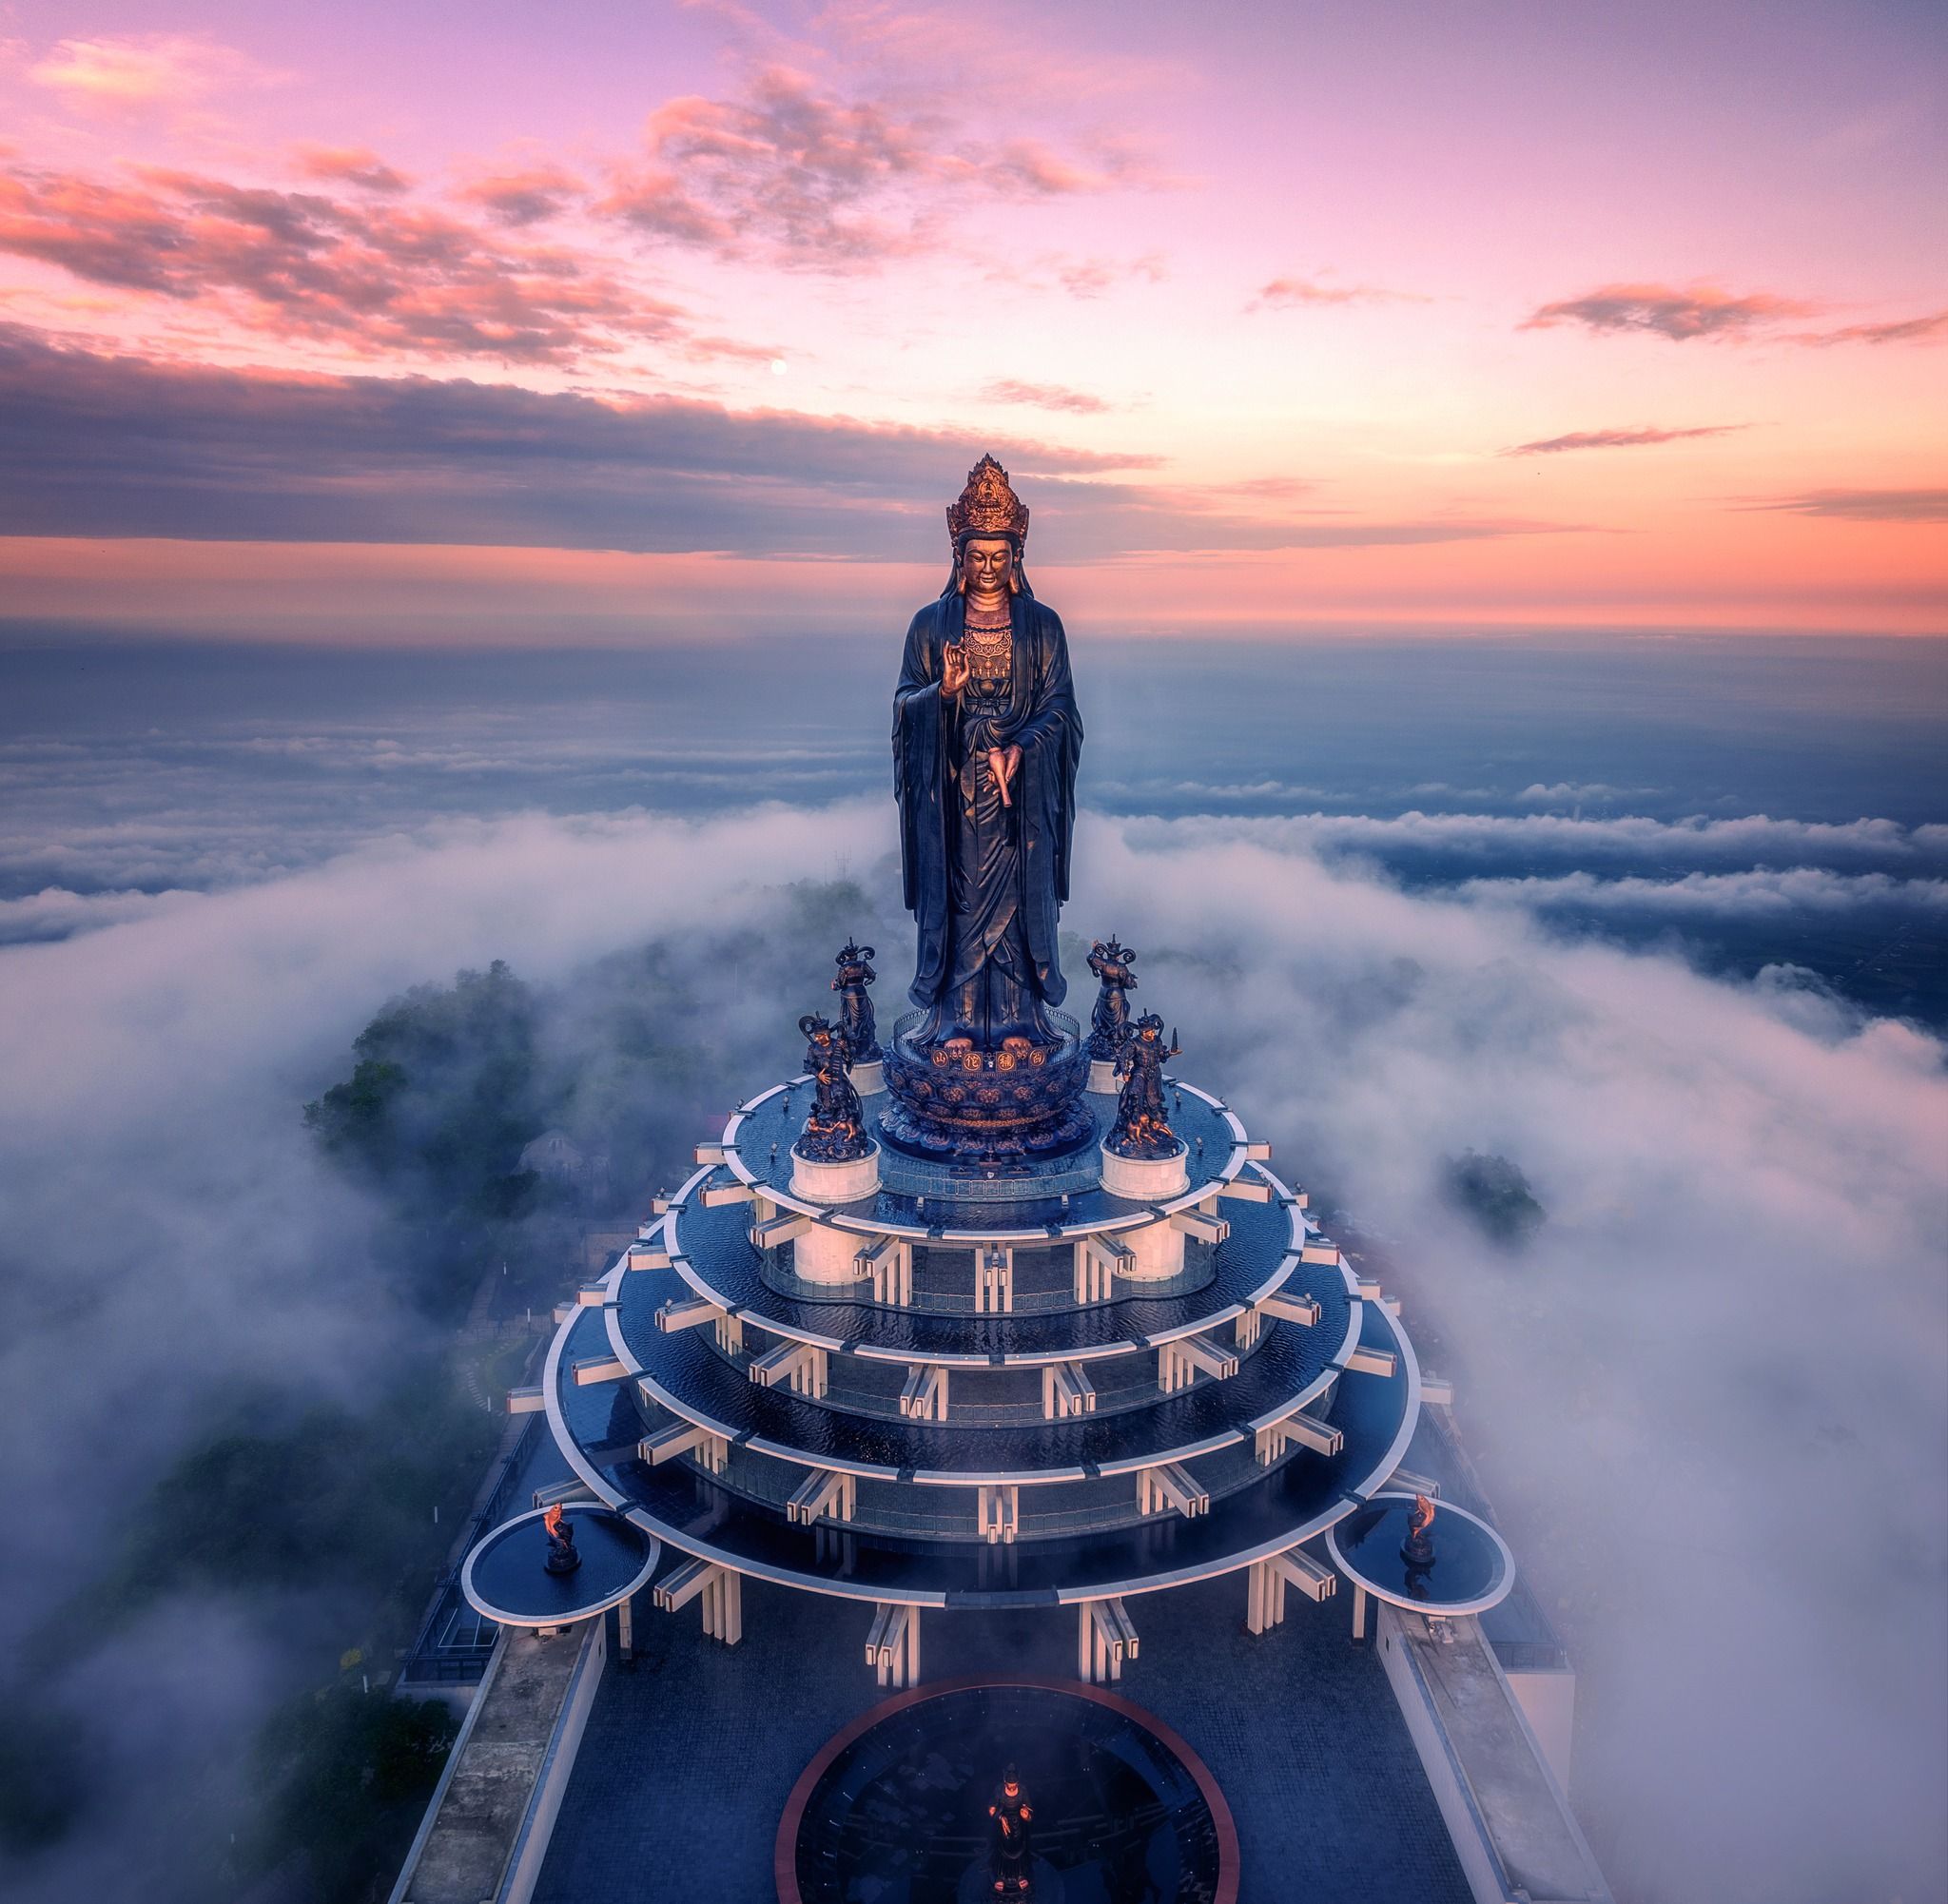 Ghé núi bà đen Tây Ninh chiêm ngưỡng Phật Bà và check-in cột kính bát nhã